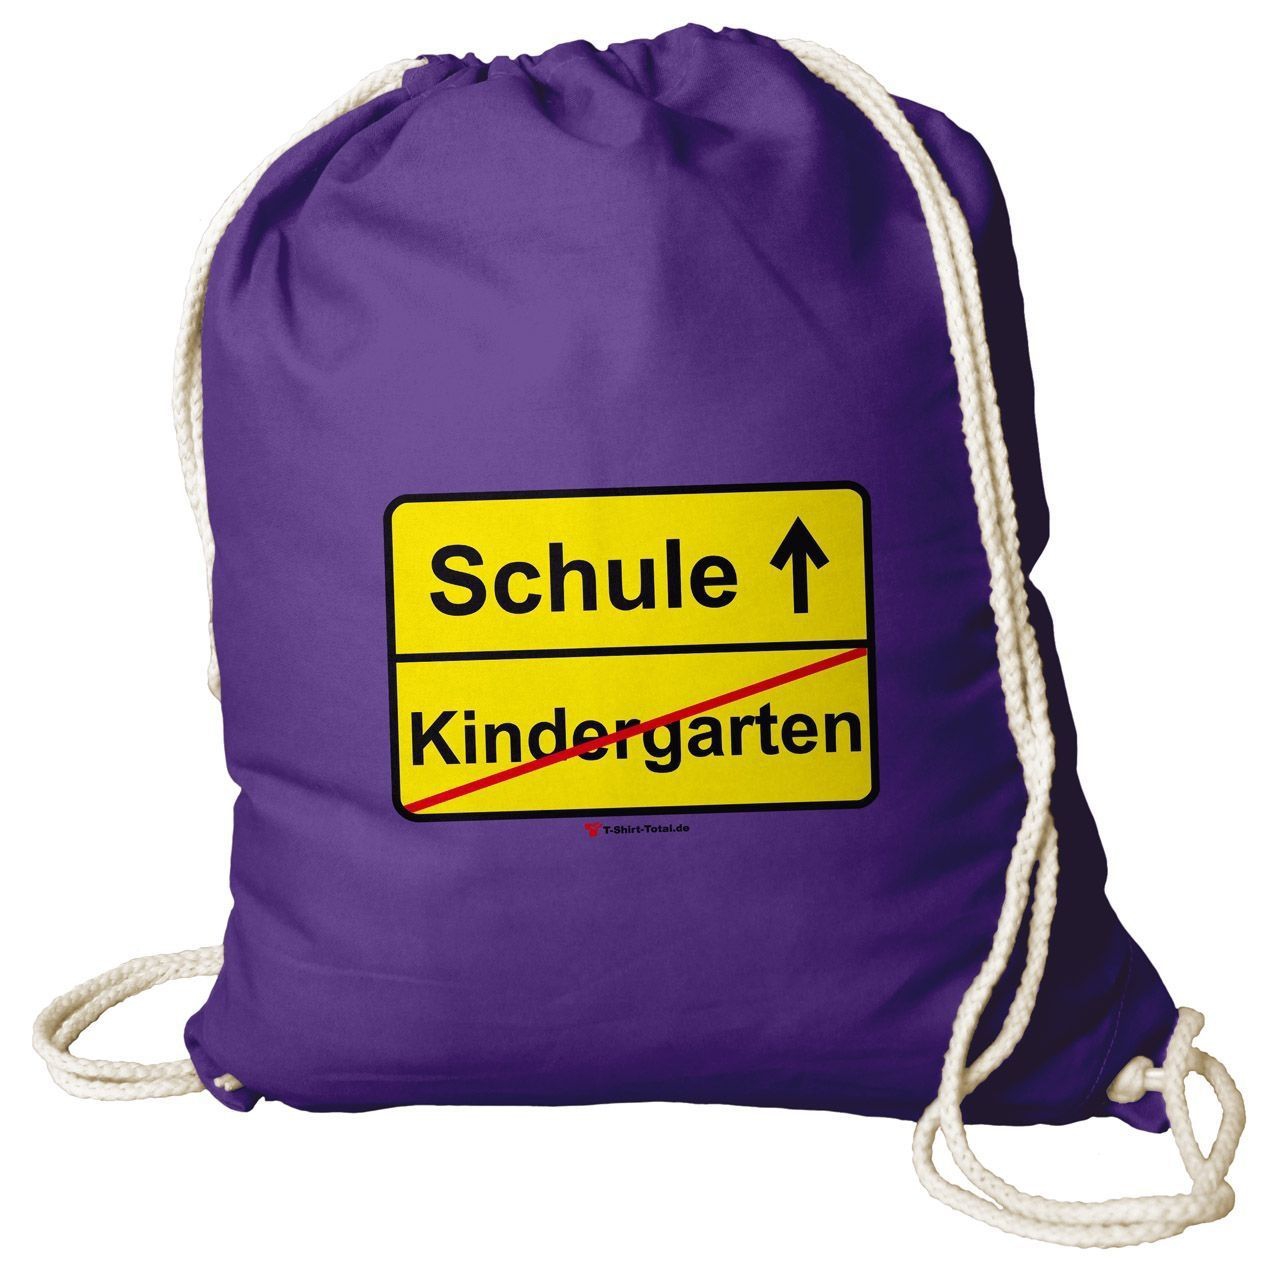 Kindergarten Schule Rucksack Beutel lila